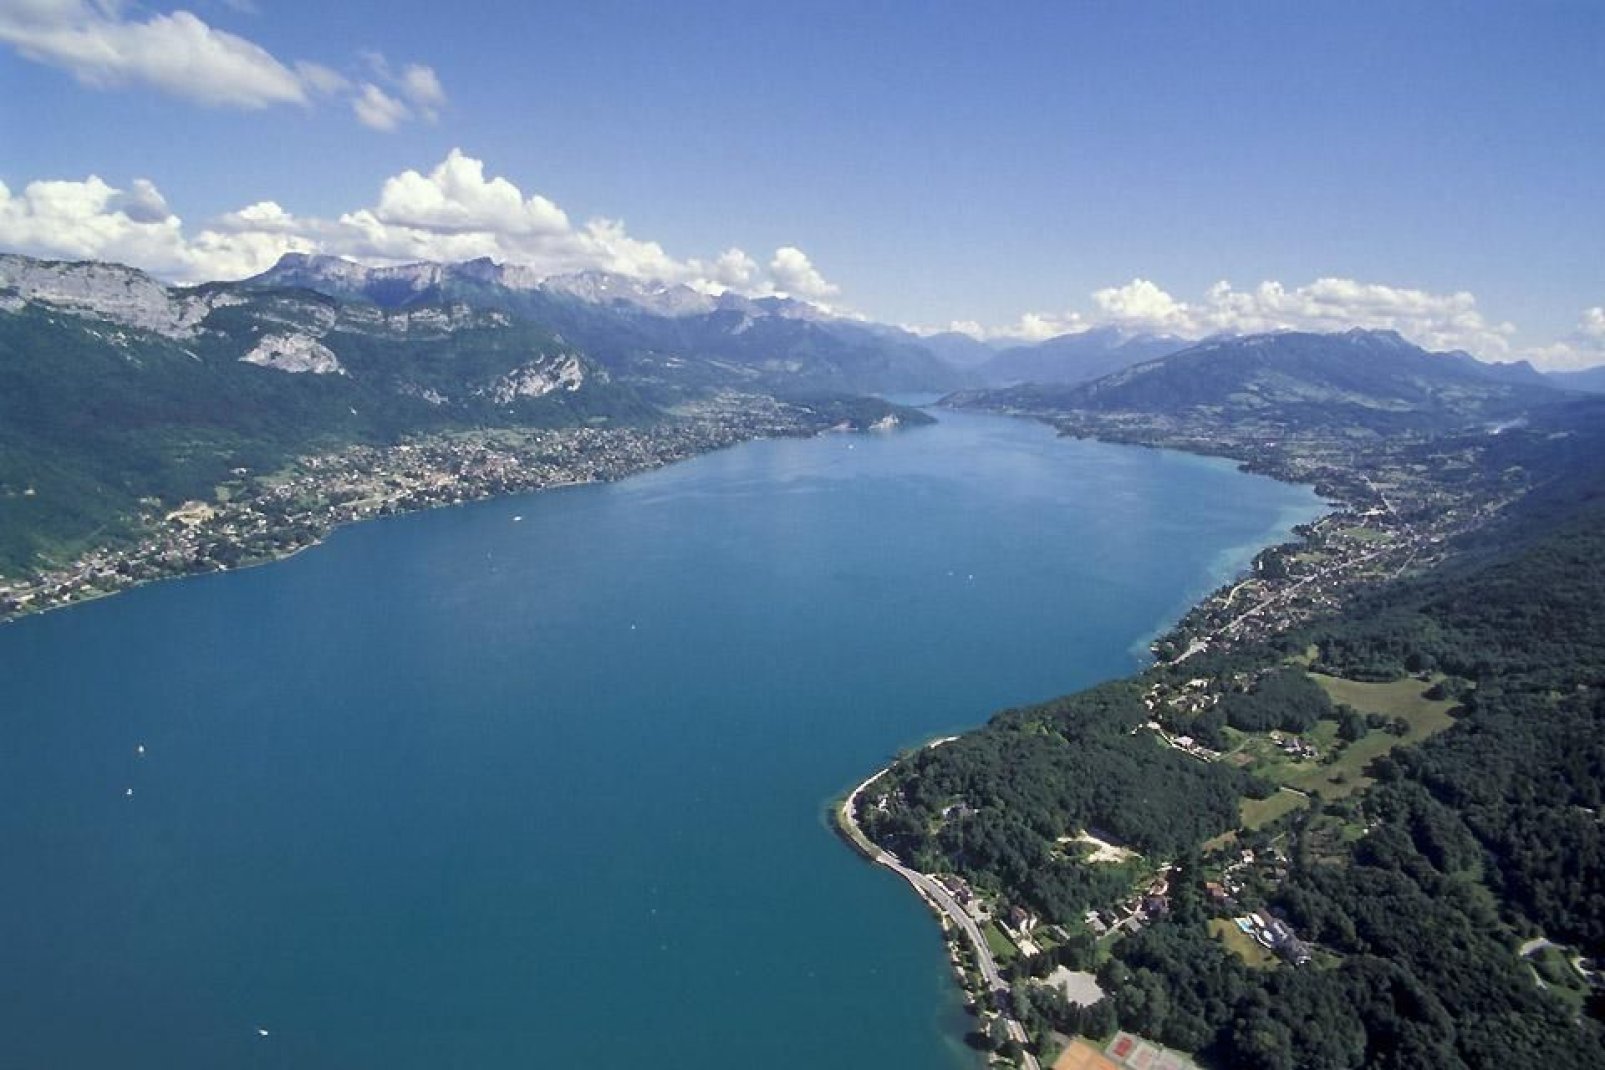 La superficie de este lago, también apodado el lago azul, mide unos 28 km. Este lugar se beneficia de un entorno único, con una fauna y una flora incomparables.